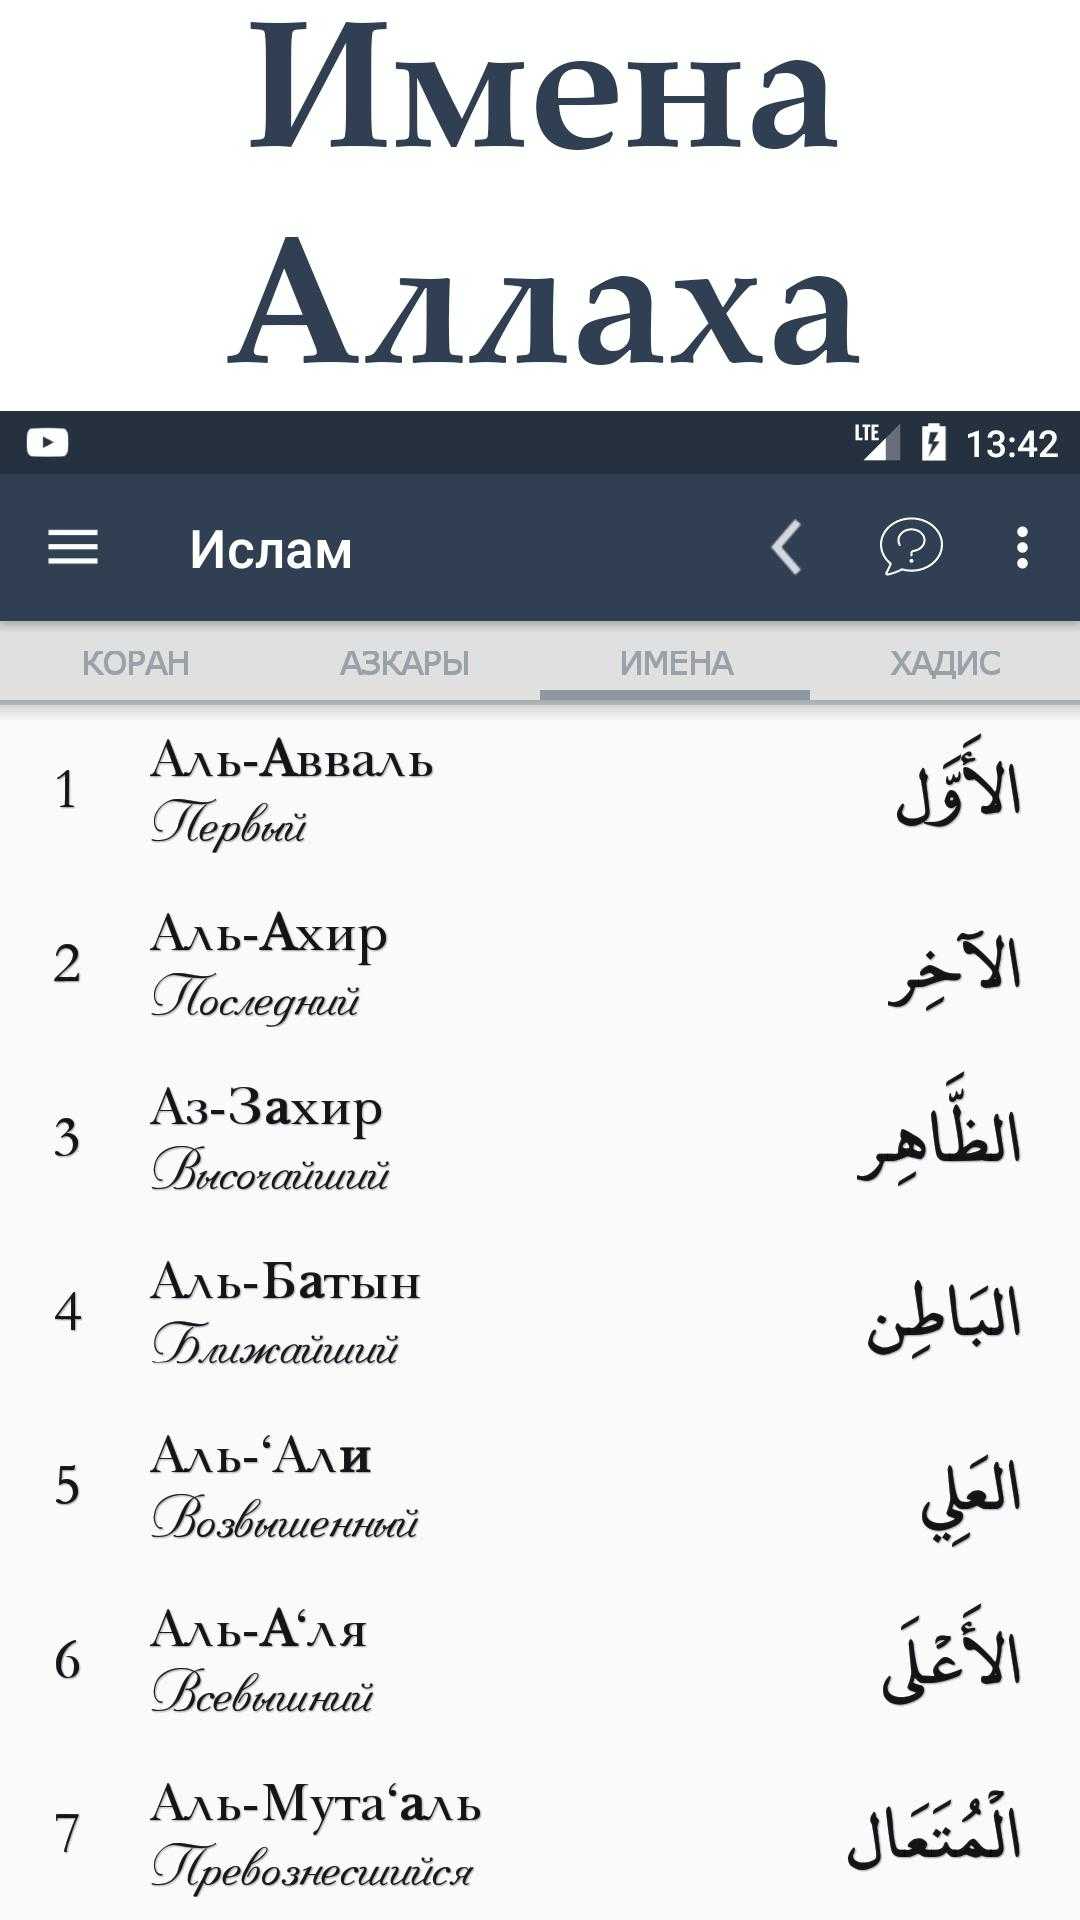 Слушать корана на арабский на русский. Самые красивые мусульманские имена для мальчиков из Корана. Арабские имена для девочек мусульманские. Арабские имена для мальчиков из Корана. Мусульманские женские имена для девочек из Корана.